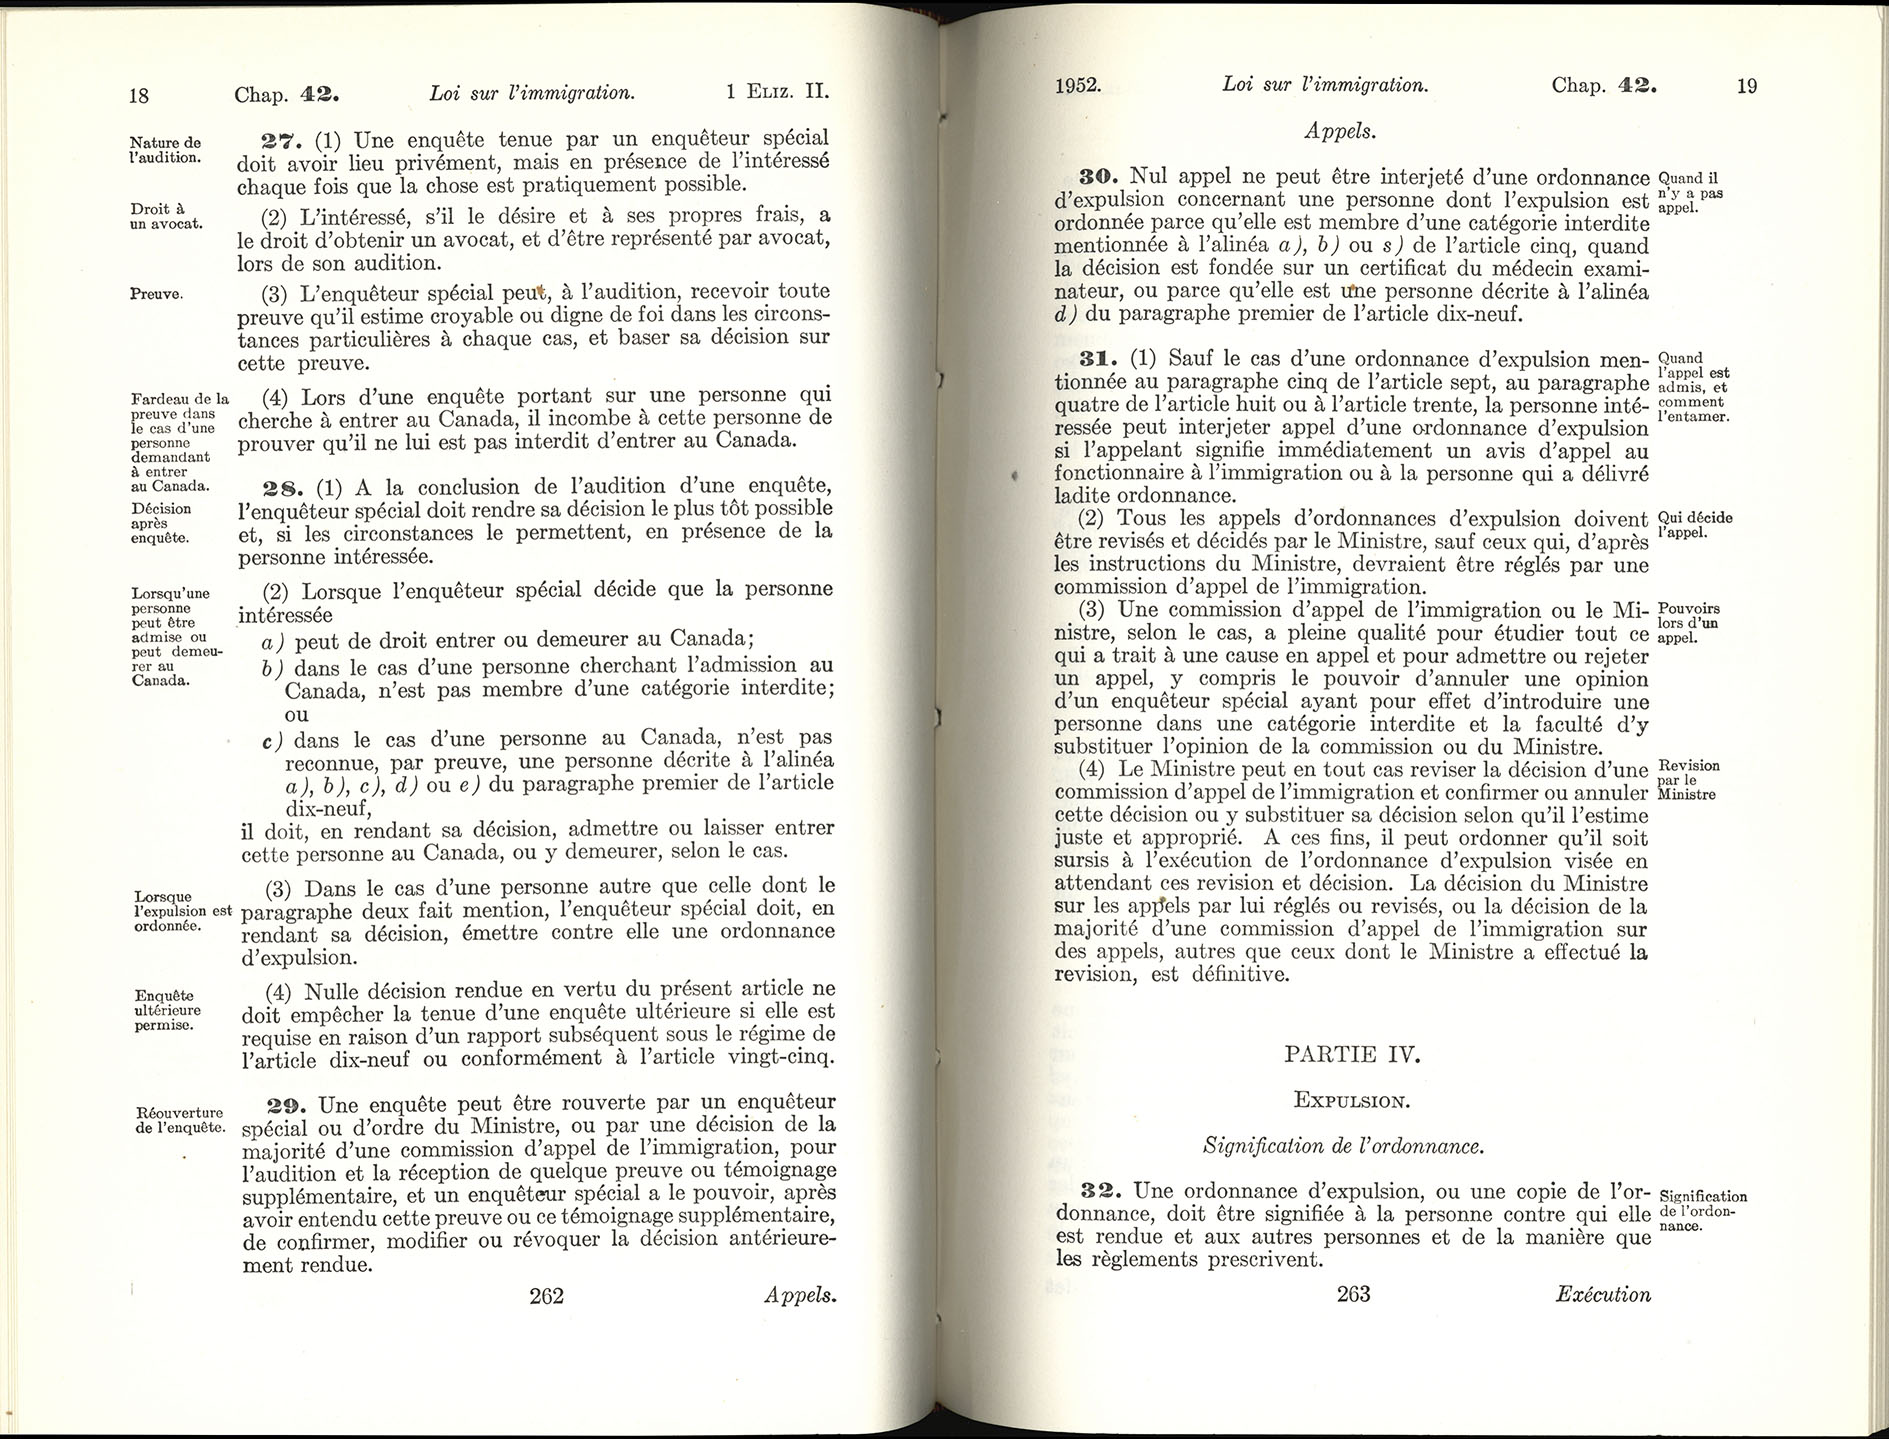 Chap 42 Page 262, 263 Loi sur l’immigration, 1952